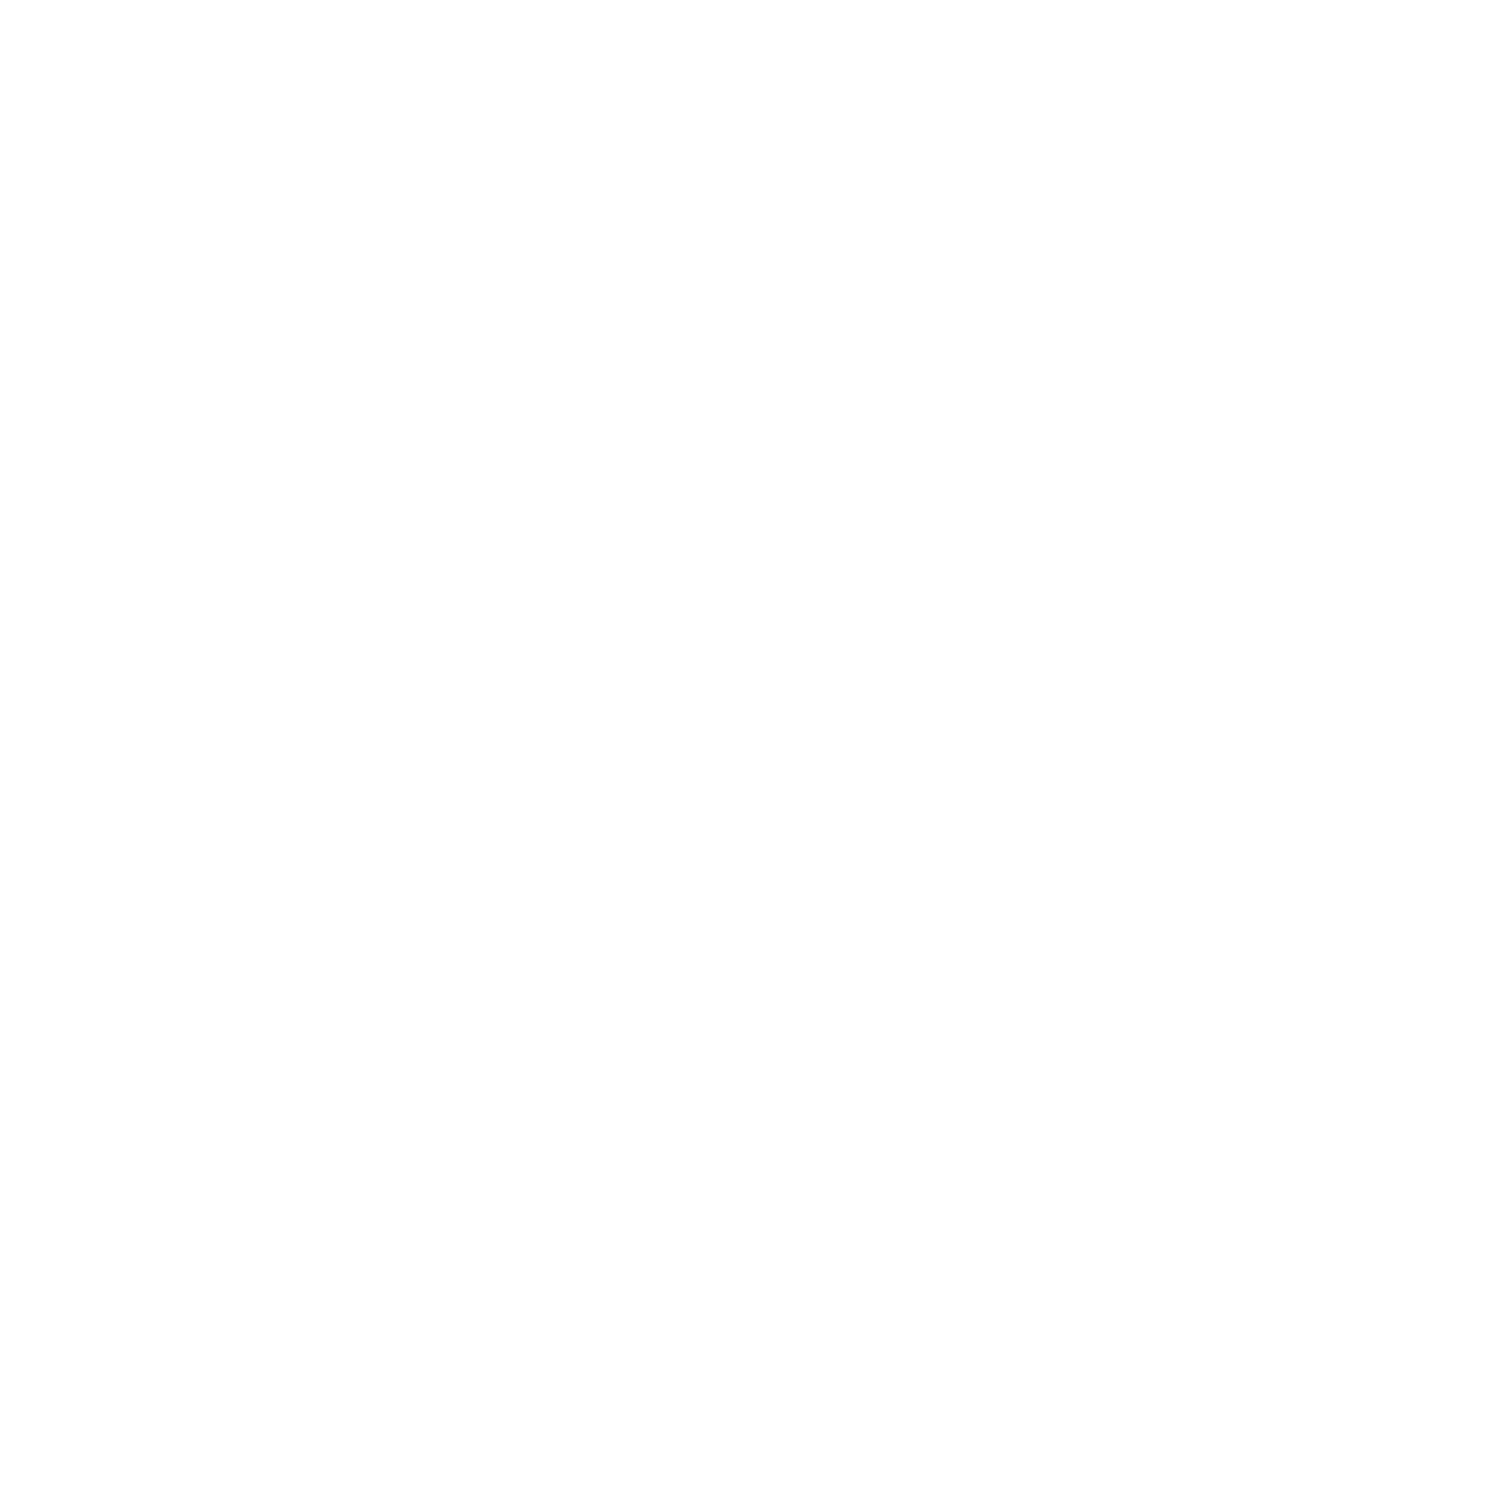 Millcreek Common